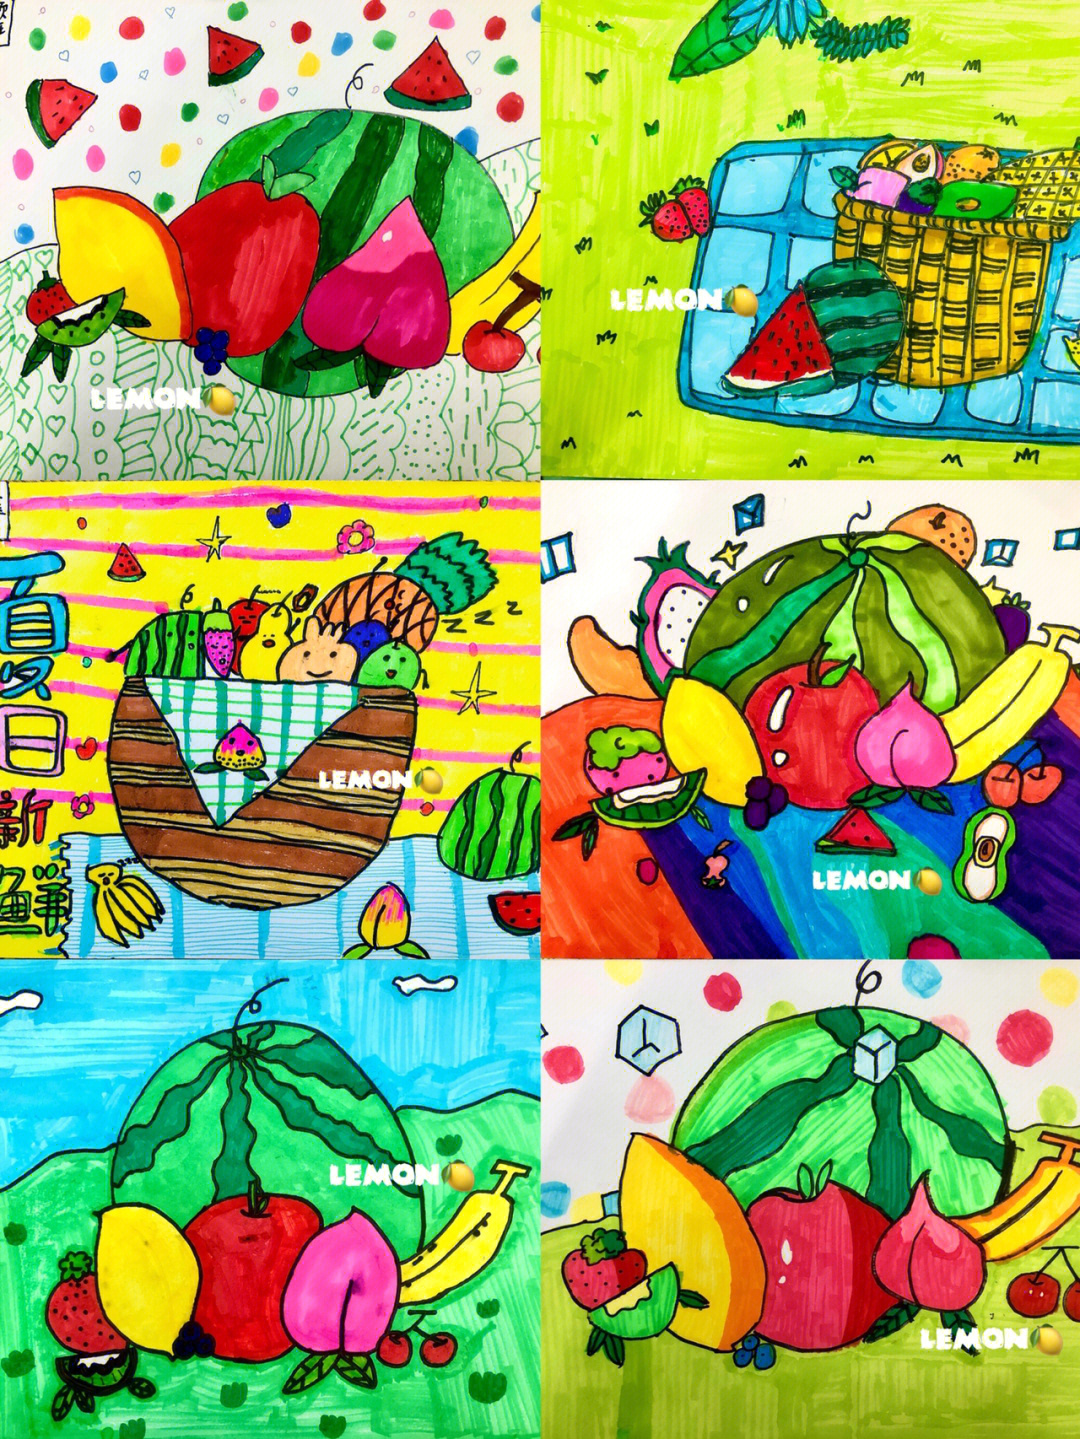 二年级水果画 作品图片